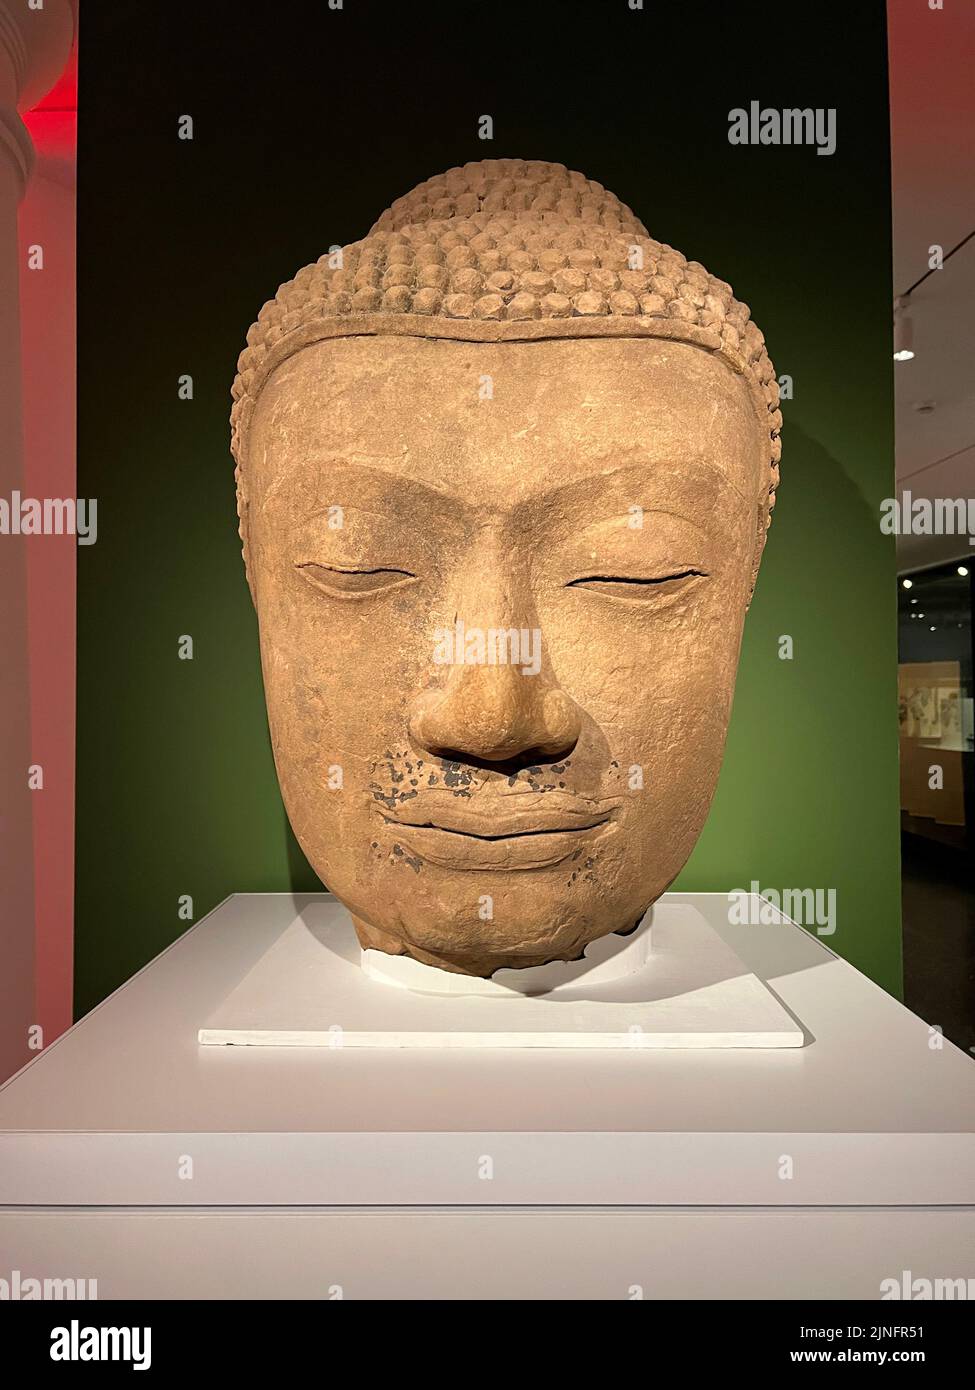 Cabeza de un Buda; Tailandia, siglo 14th; piedra arenisca con restos de laca; Museo de Brooklyn, Nueva York. La cabeza estaba sobre una enorme figura de pie o sentada del Buda Shakyamuni. Foto de stock